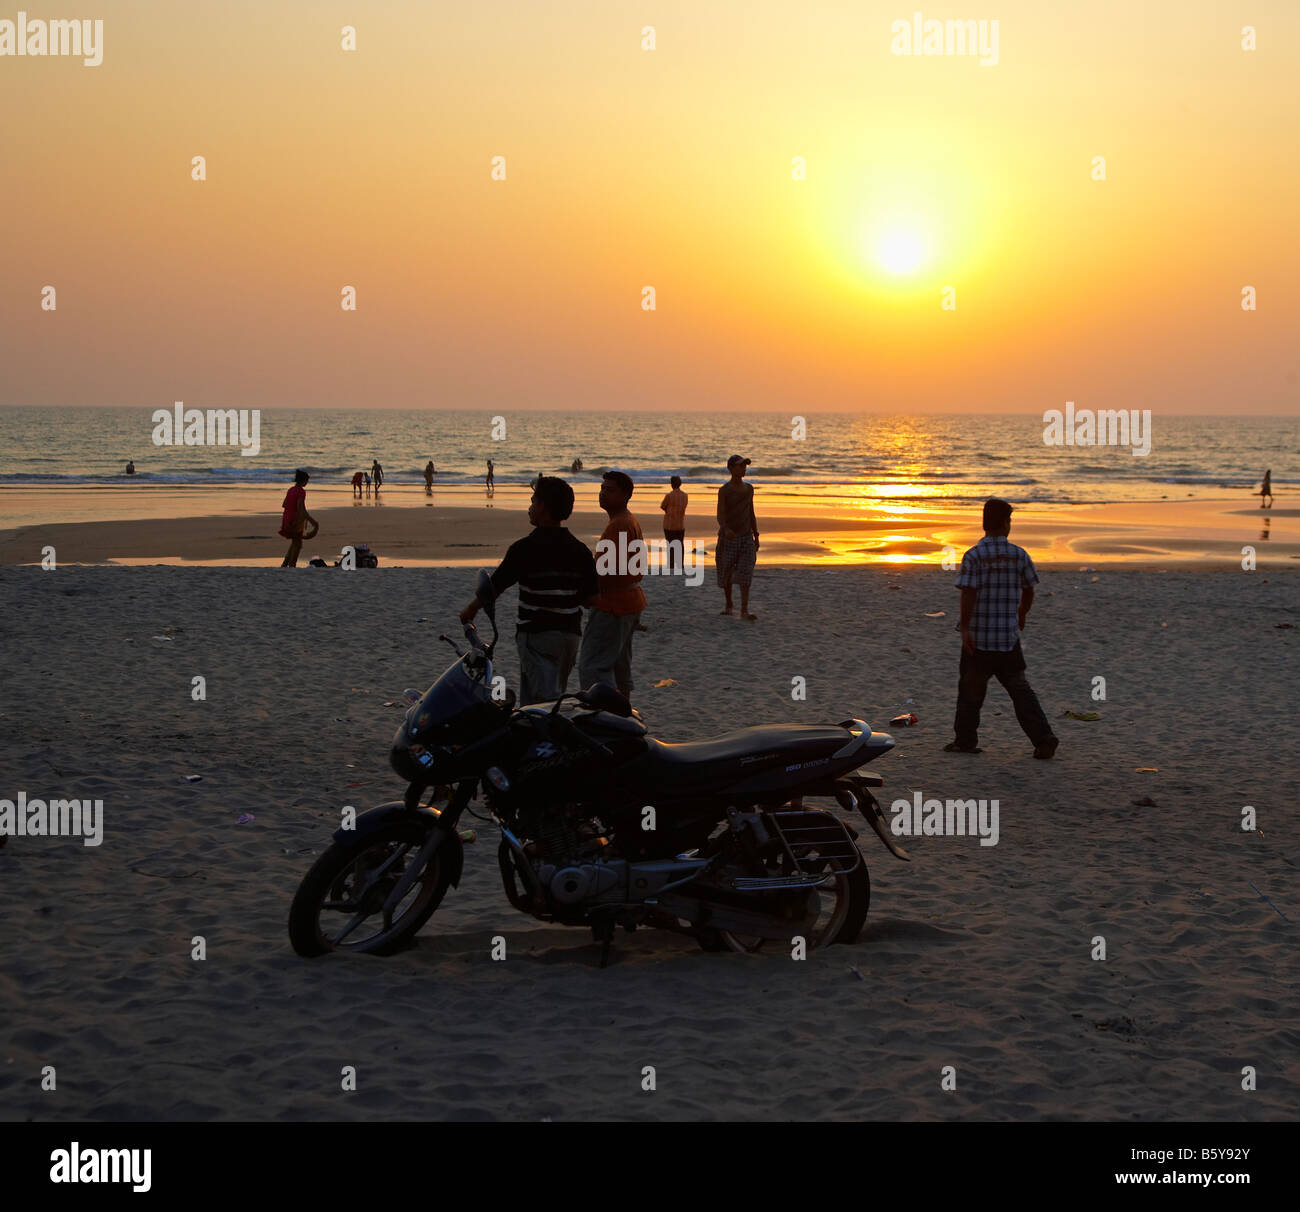 Moto et coucher du soleil à Arambol Beach, Goa, Inde Banque D'Images